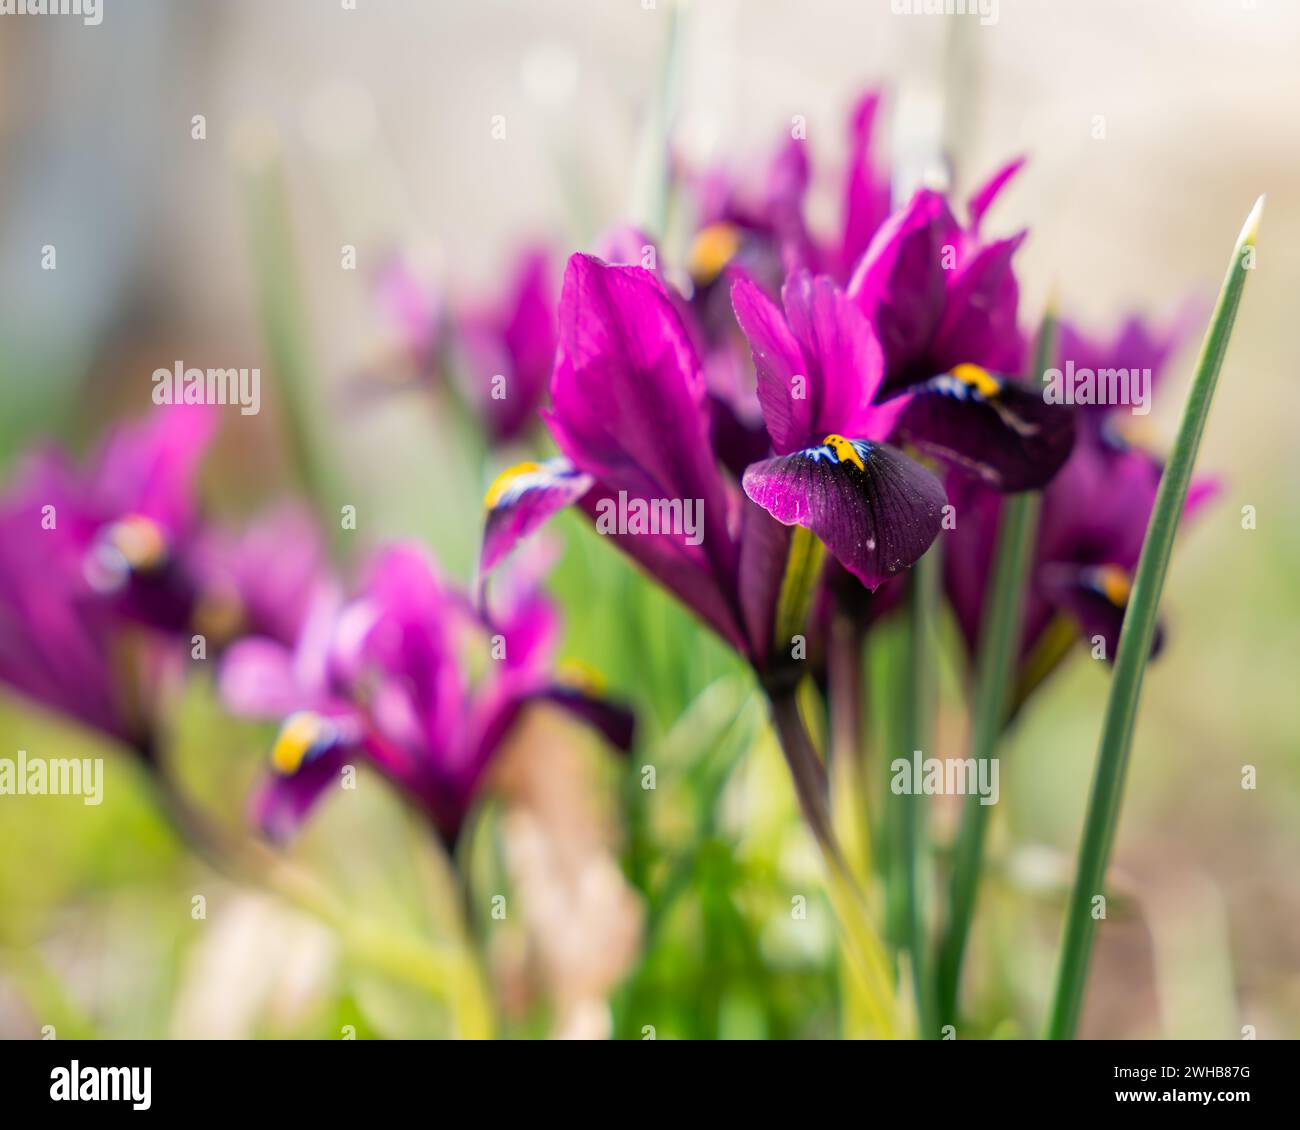 Fleur d'iris violette poussant dans le jardin. Iris pygmée violet violet ou iris nain (Iris pumila) en fleur dans la prairie au printemps. Flou de mise au point. Mise au point sélective. Banque D'Images